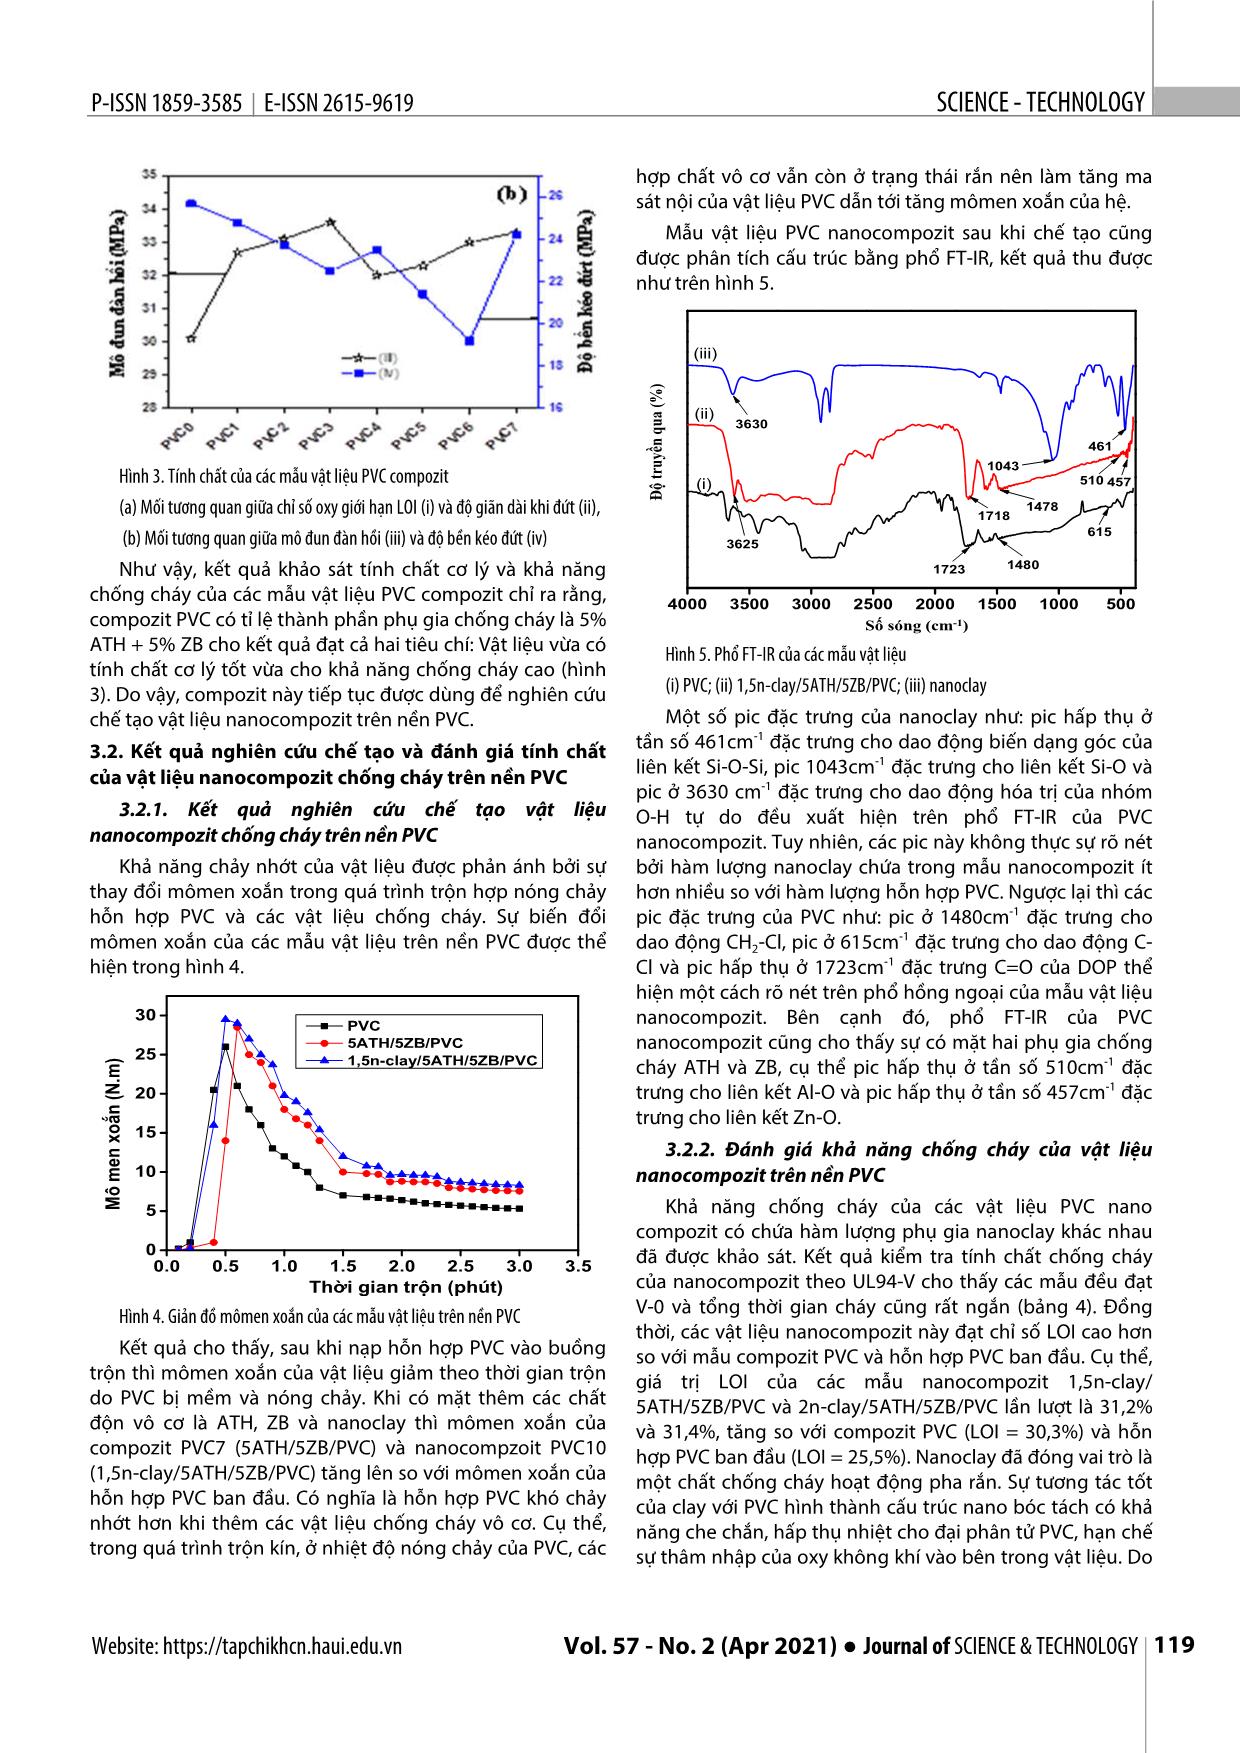 Chế tạo và đánh giá tính chất của vật liệu Nanocompozit chống cháy trên nền Polyvinyl Clorua trang 5